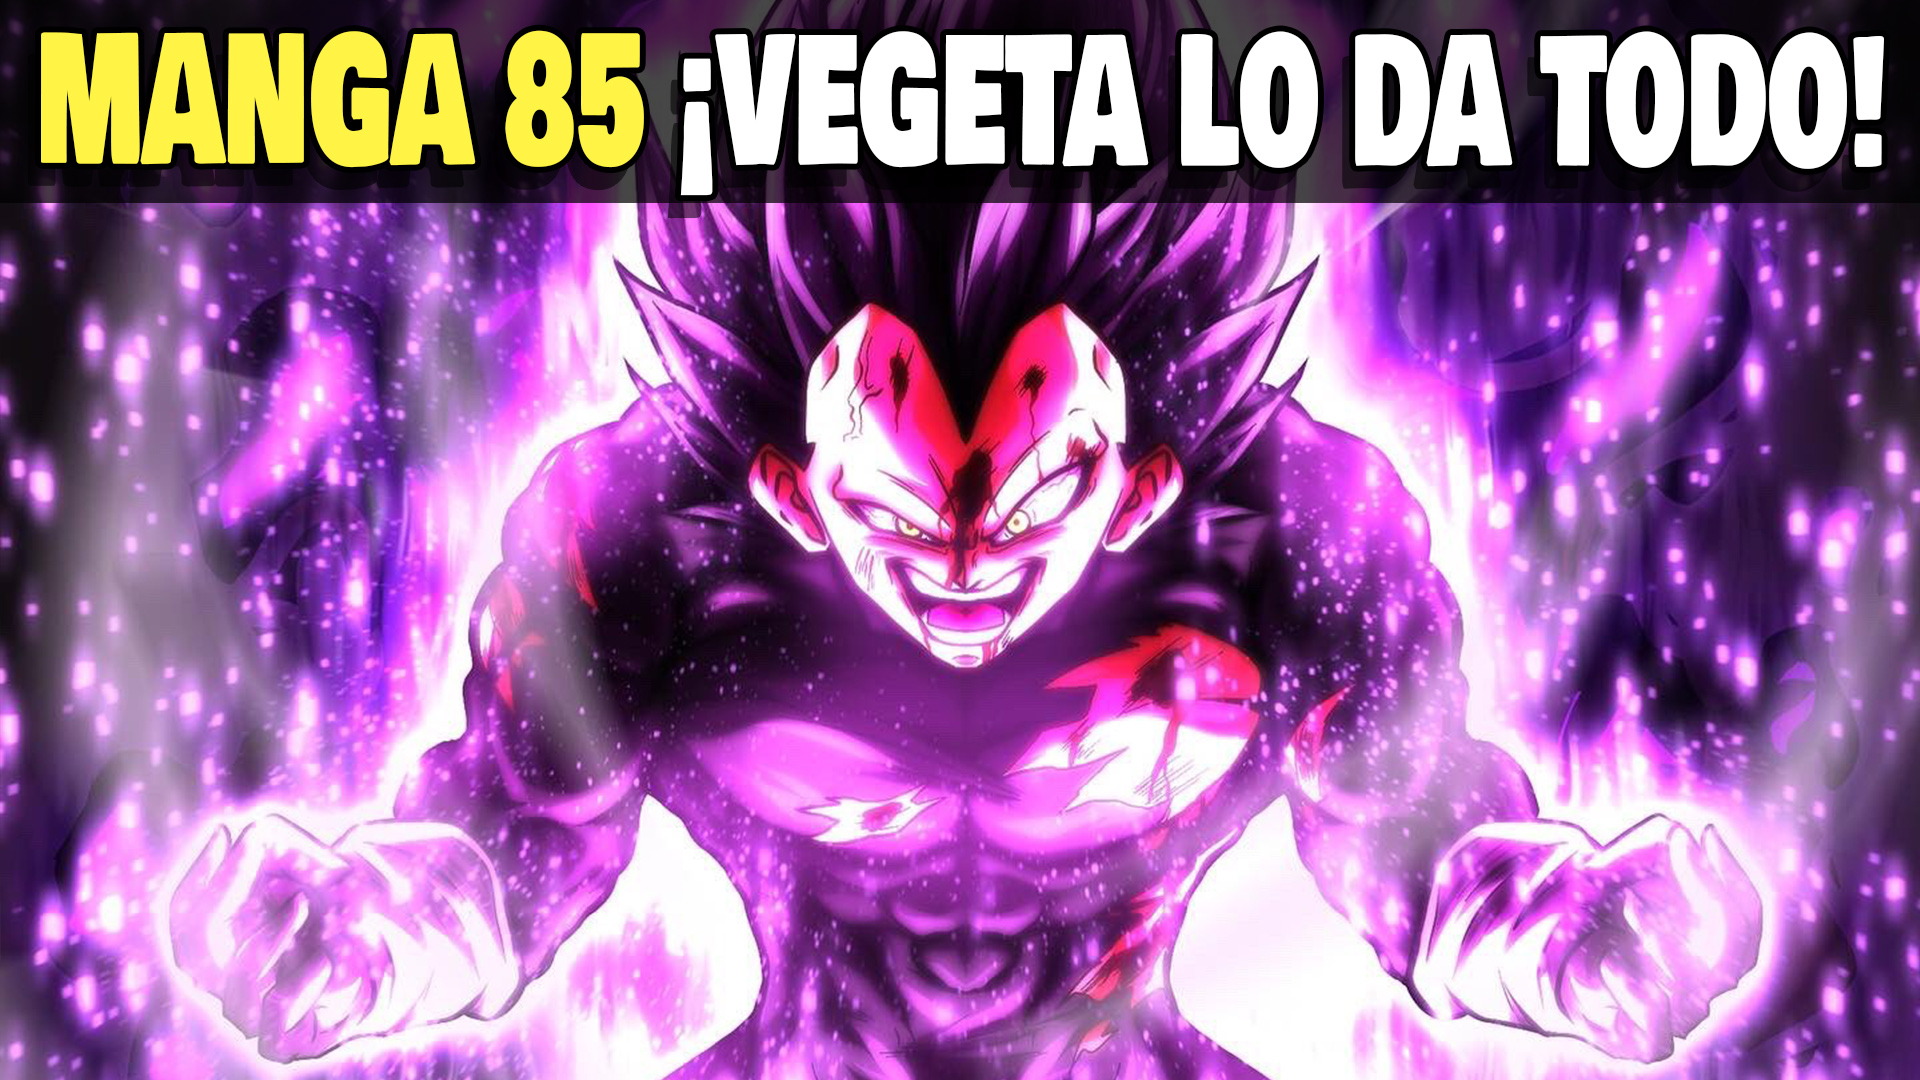 Manga 85 de Dragon Ball Super - ¡Vegeta lo da todo! - Dragon Ball Noticias